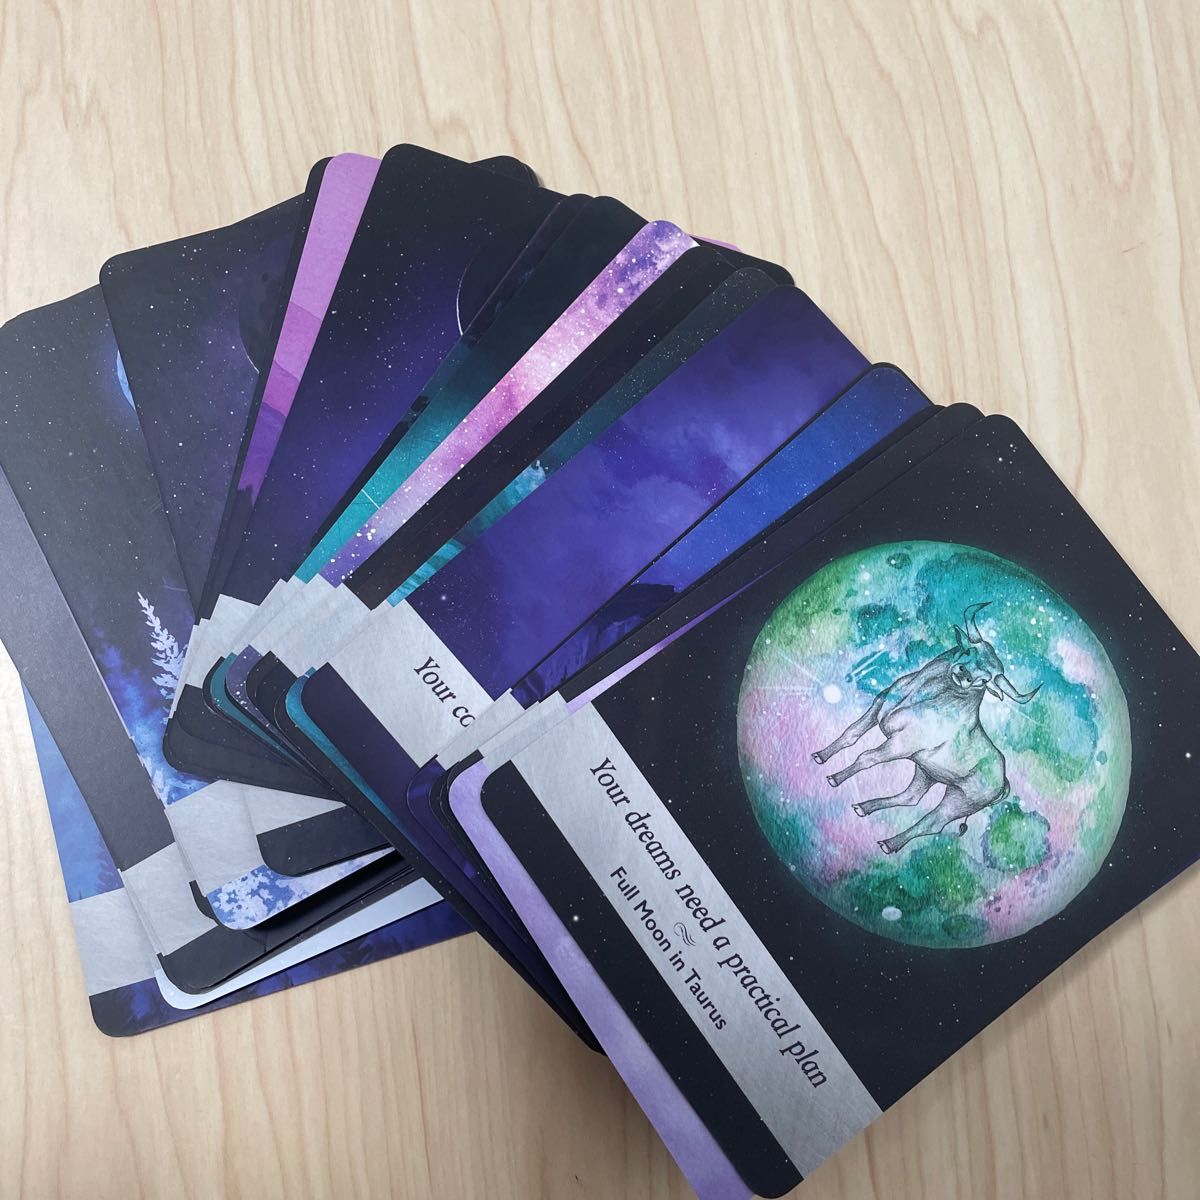 Moonology Oracle Cards ムーンオロジーオラクルカード